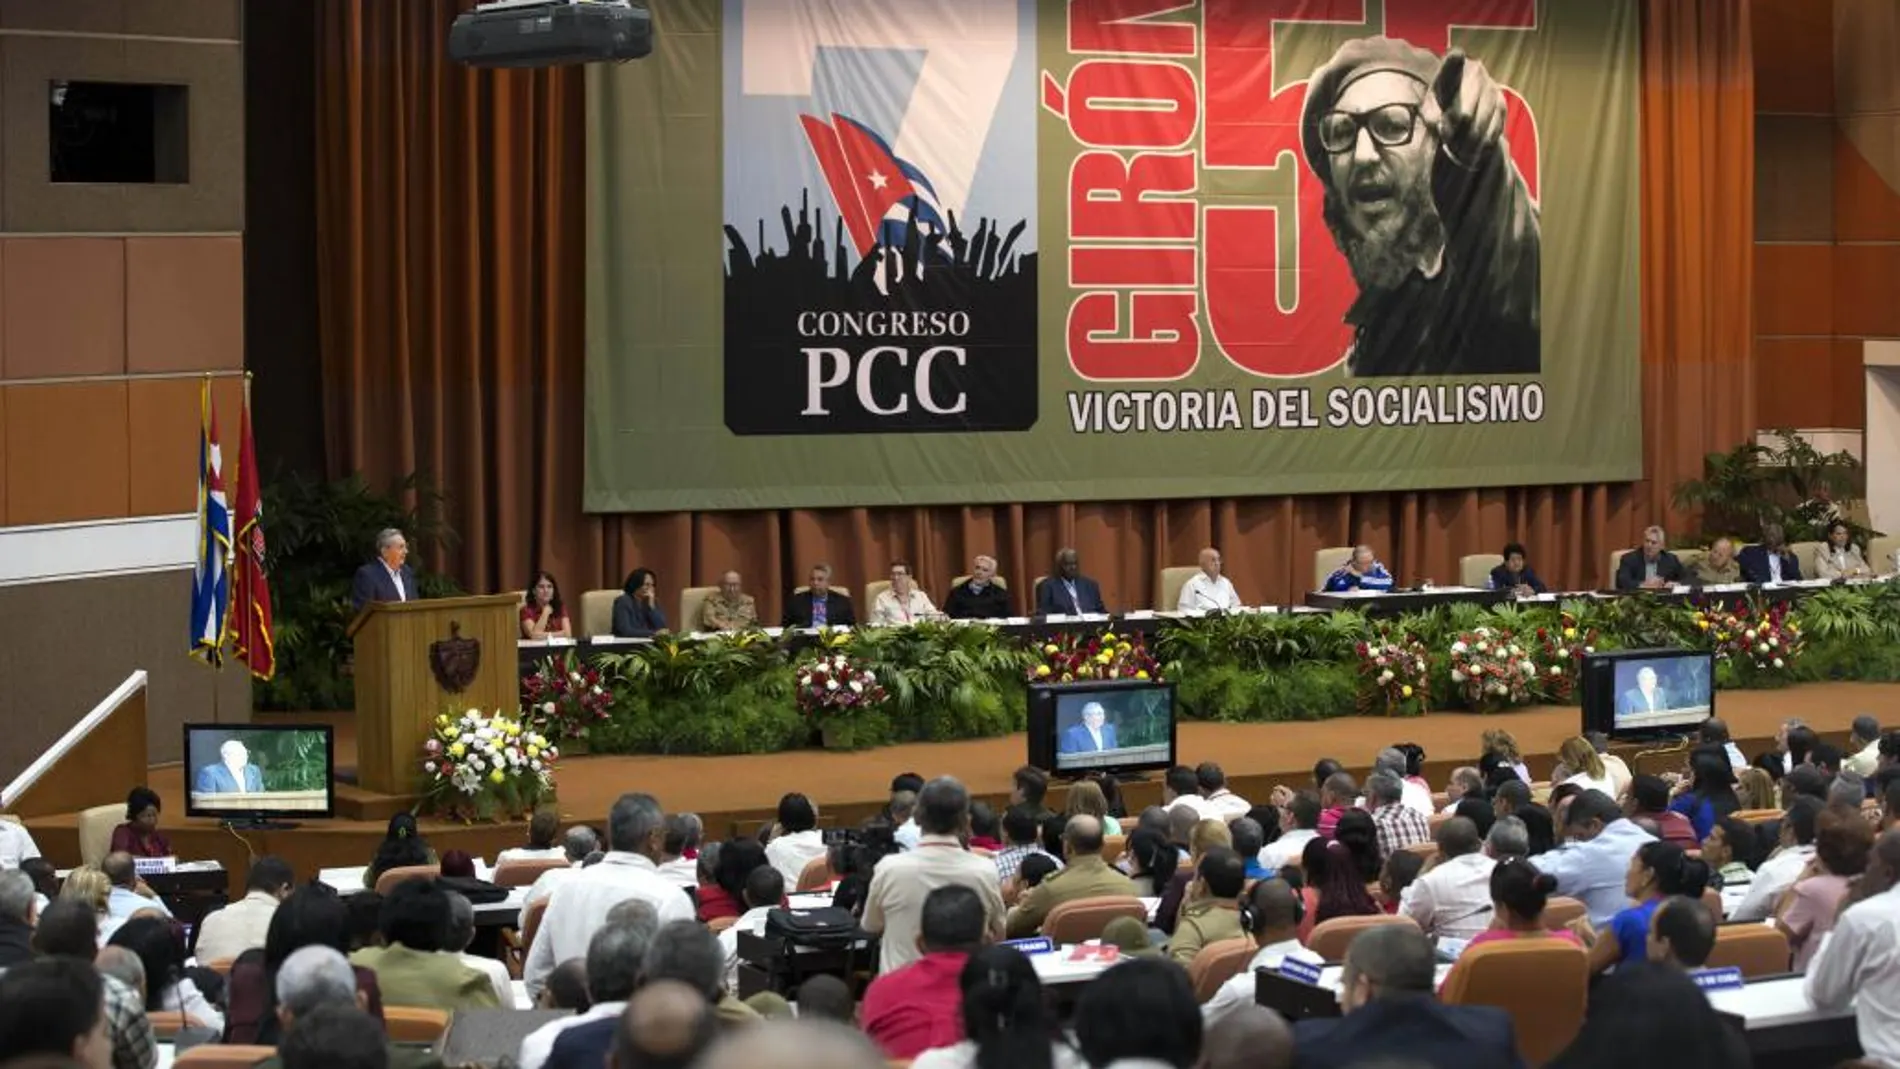 Fidel Castr escucha a su hermano Raúl durante el congreso del PPC